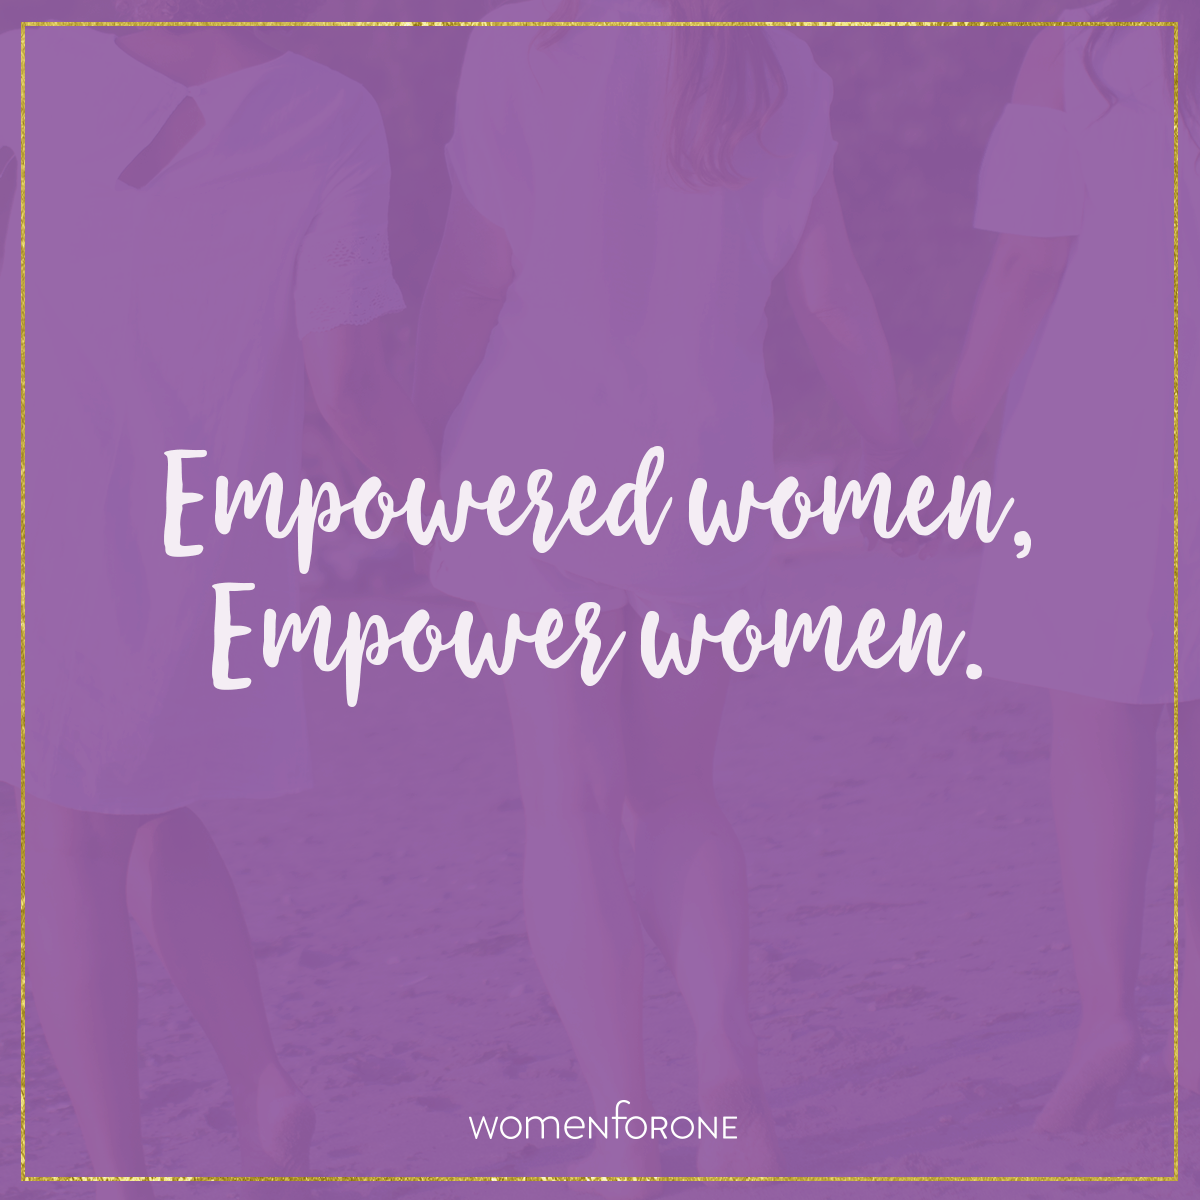 Empowered women, empower women.